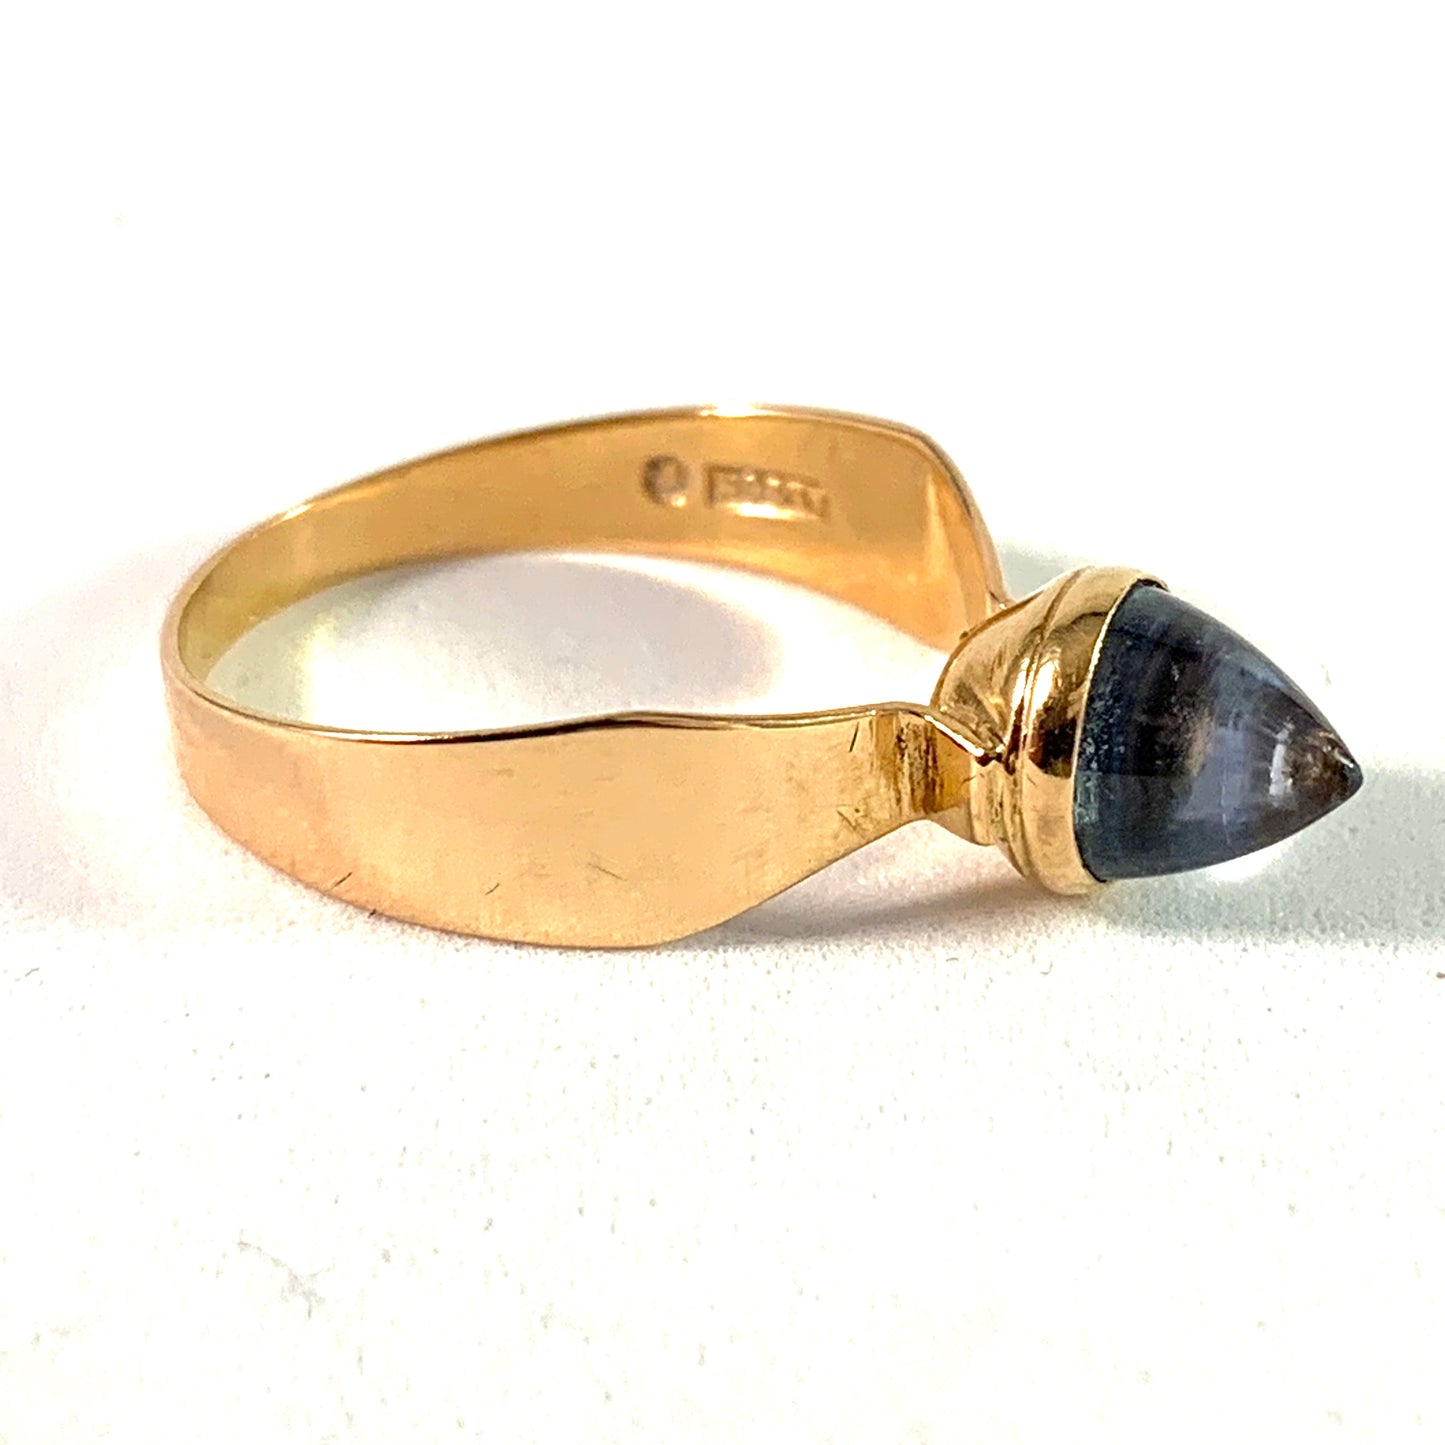 Alton, Sweden 1964 Modernist 18k Gold Spinel Ring.